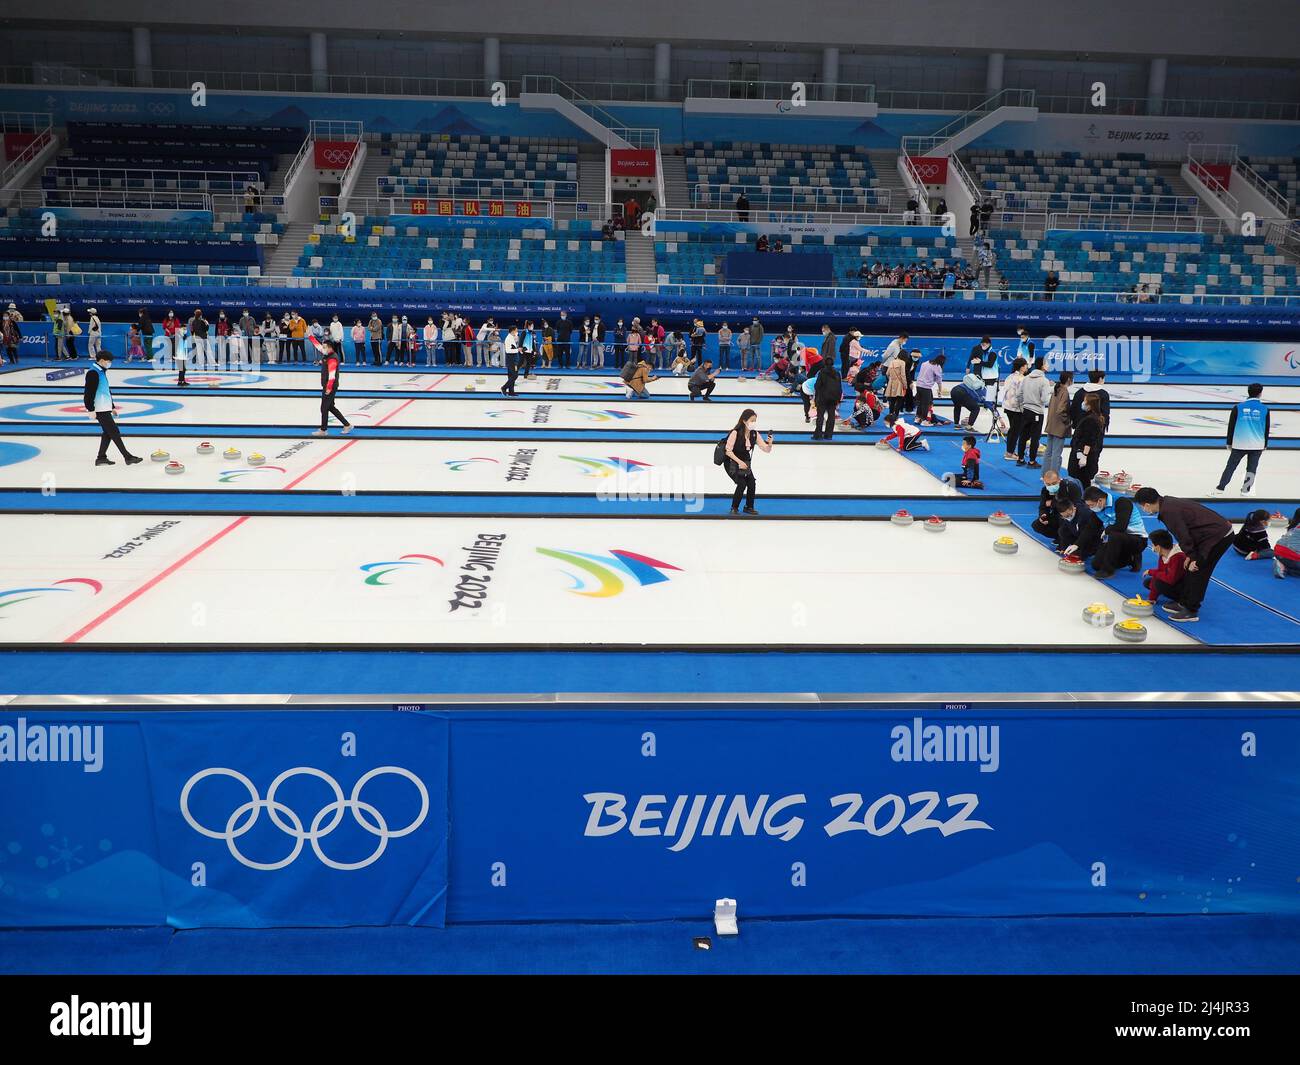 PEKING, CHINA - 16. APRIL 2022 - Bürger erleben am 16. April 2022 im Nationalen Wassersportzentrum in Peking, China, Eisstockschießen. Stockfoto